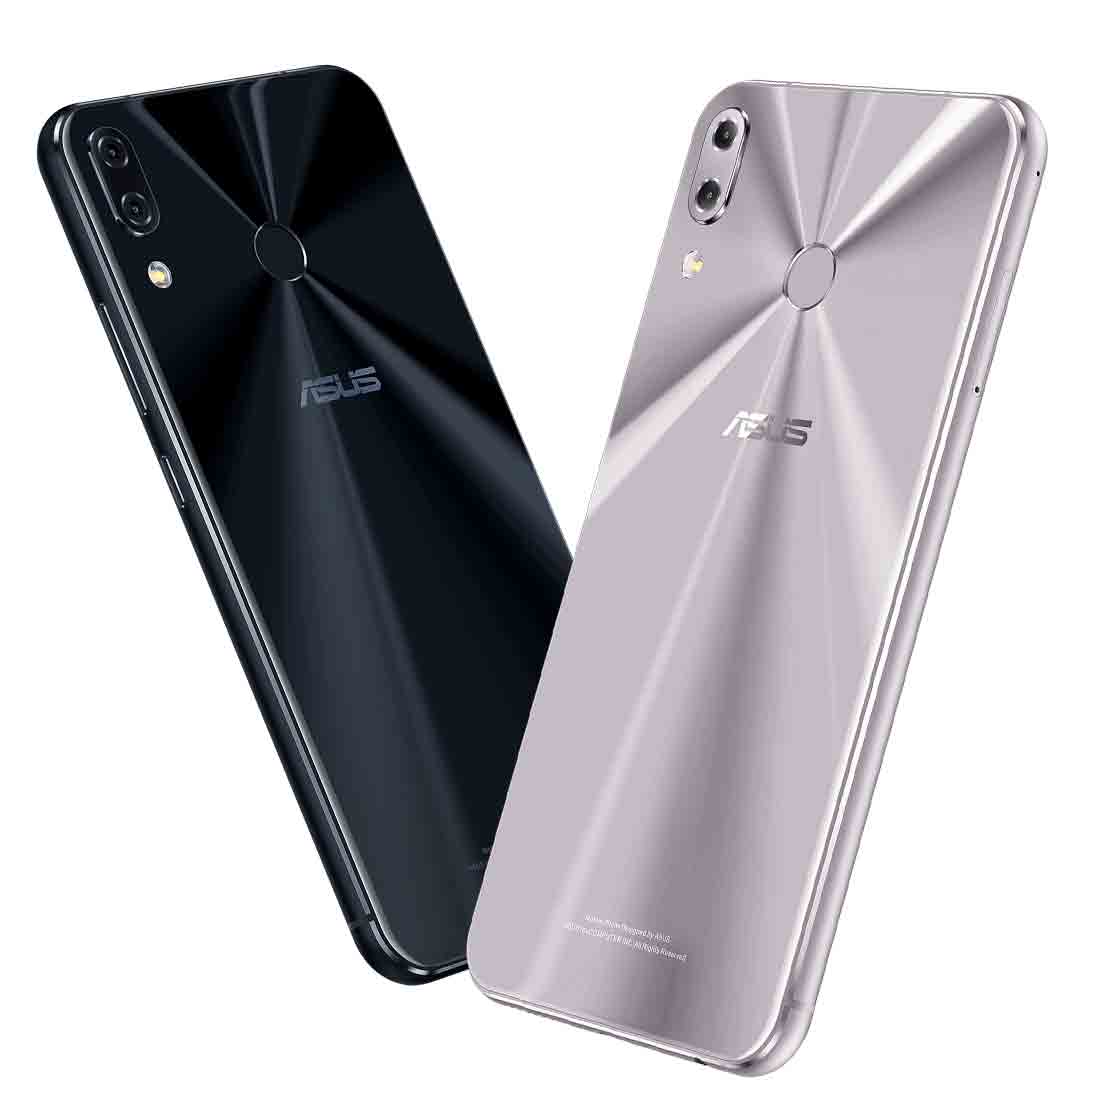 Мобильный телефон ASUS ZenFone 5 (2018) - подробные характеристики обзоры видео фото Цены в интернет-магазинах где можно купить мобильный телефон ASUS ZenFone 5 (2018)